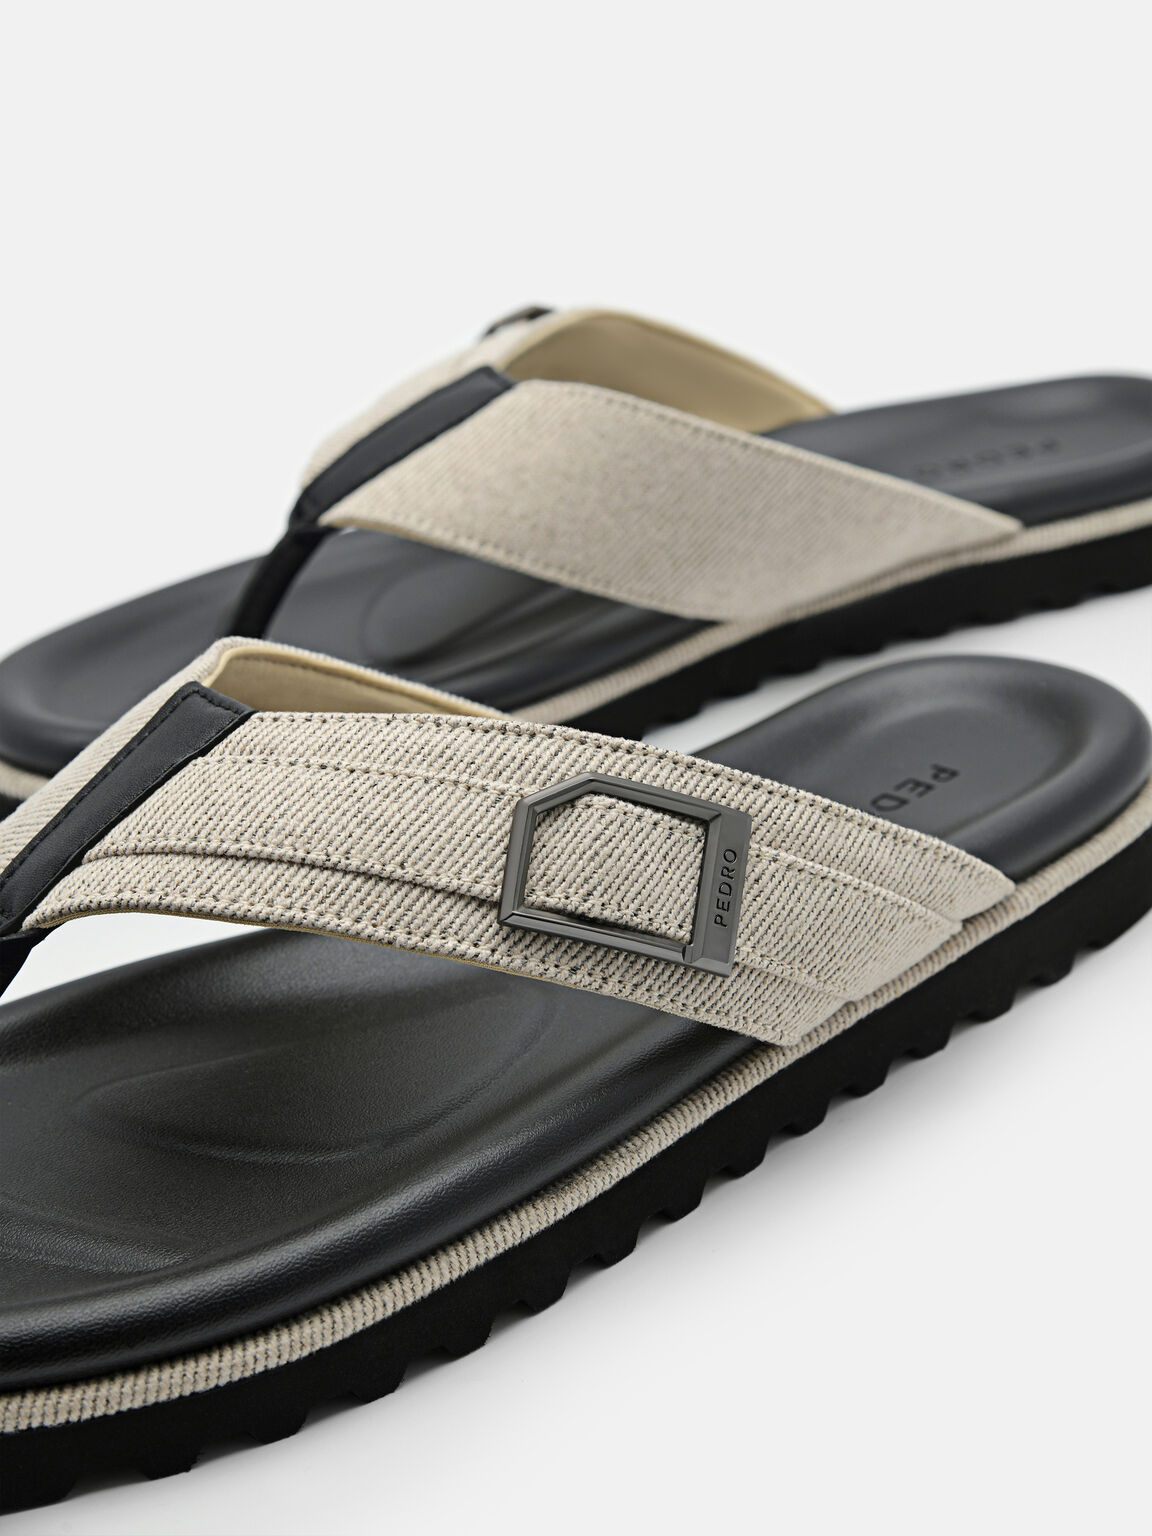 Ezra Fabric Thong Sandals, Beige, hi-res